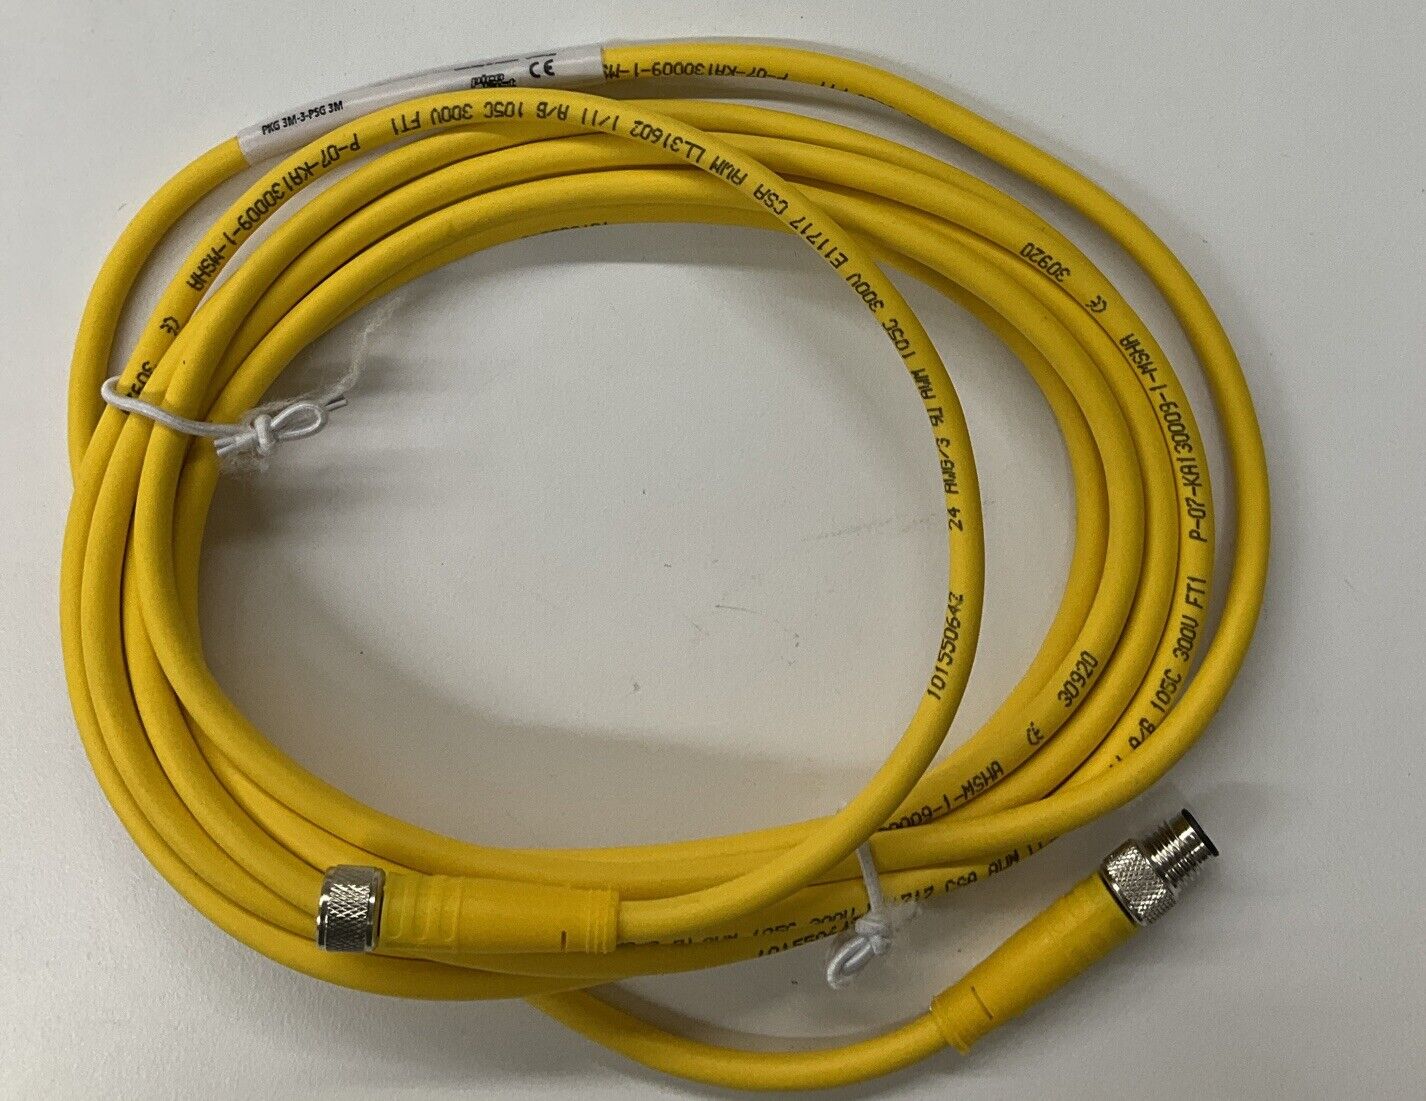 Turck PKG-3M-3-PSG 3M / U2516-36 3-Pin Cable M/F (CL319)